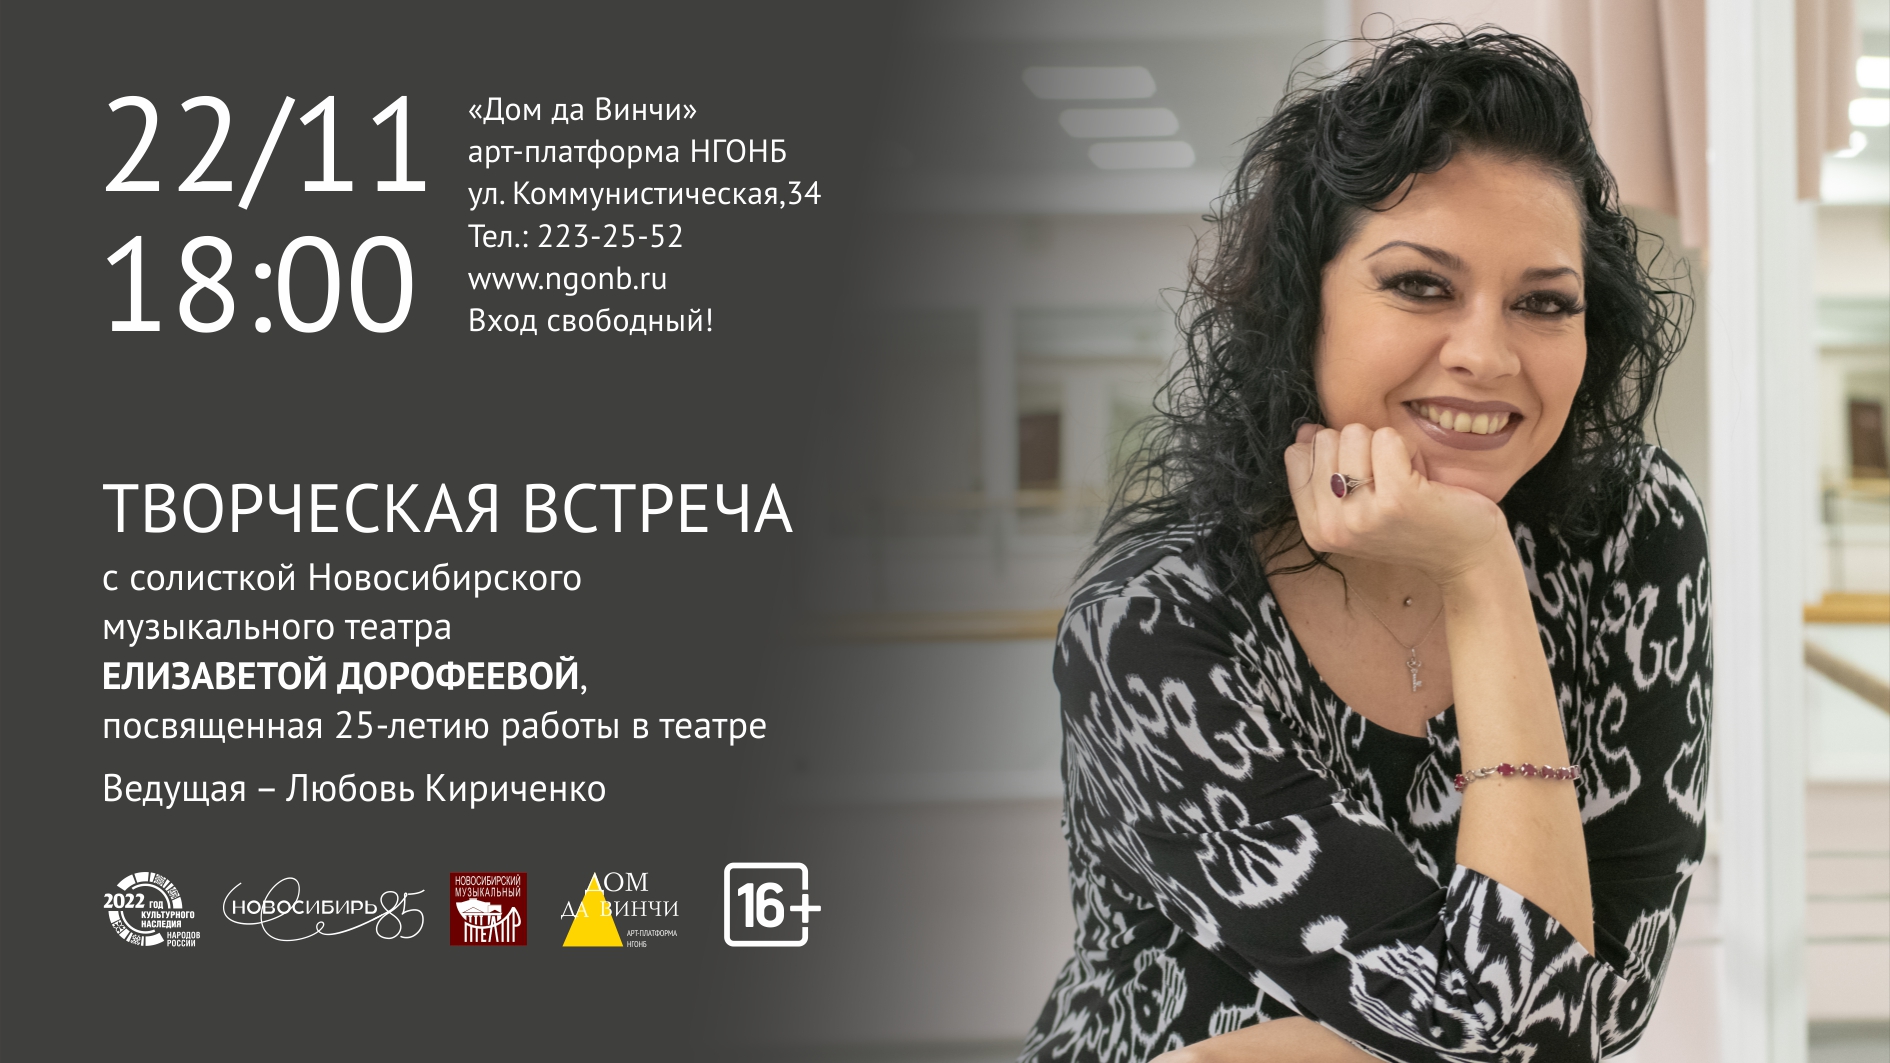 Елизавета Дорофеева, солистка Новосибирского музыкального театра: 25 лет на сцене